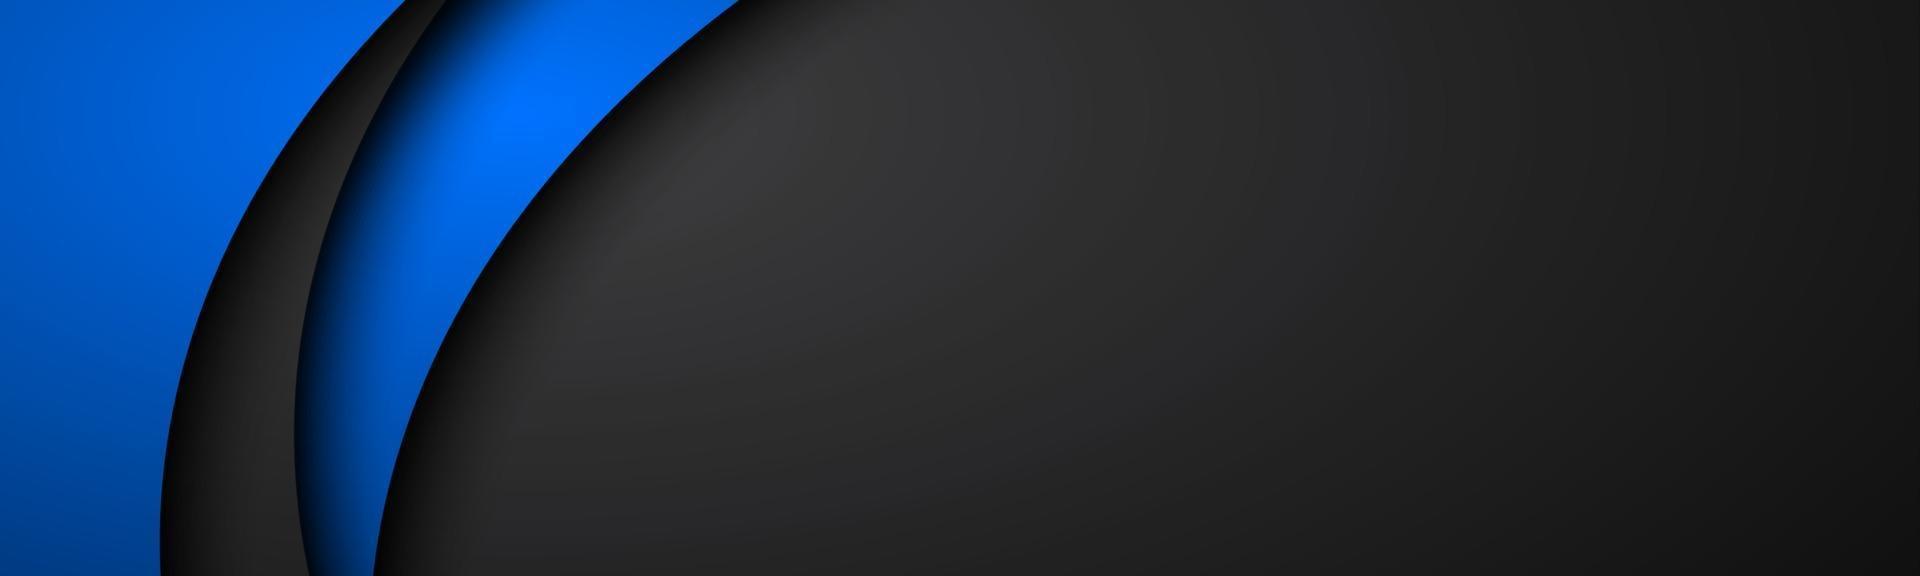 abstracte zwarte en blauwe golf vector banner met lege ruimte voor uw tekst donkere overlayp laag papieren koptekst moderne huisstijl achtergrond vectorillustratie